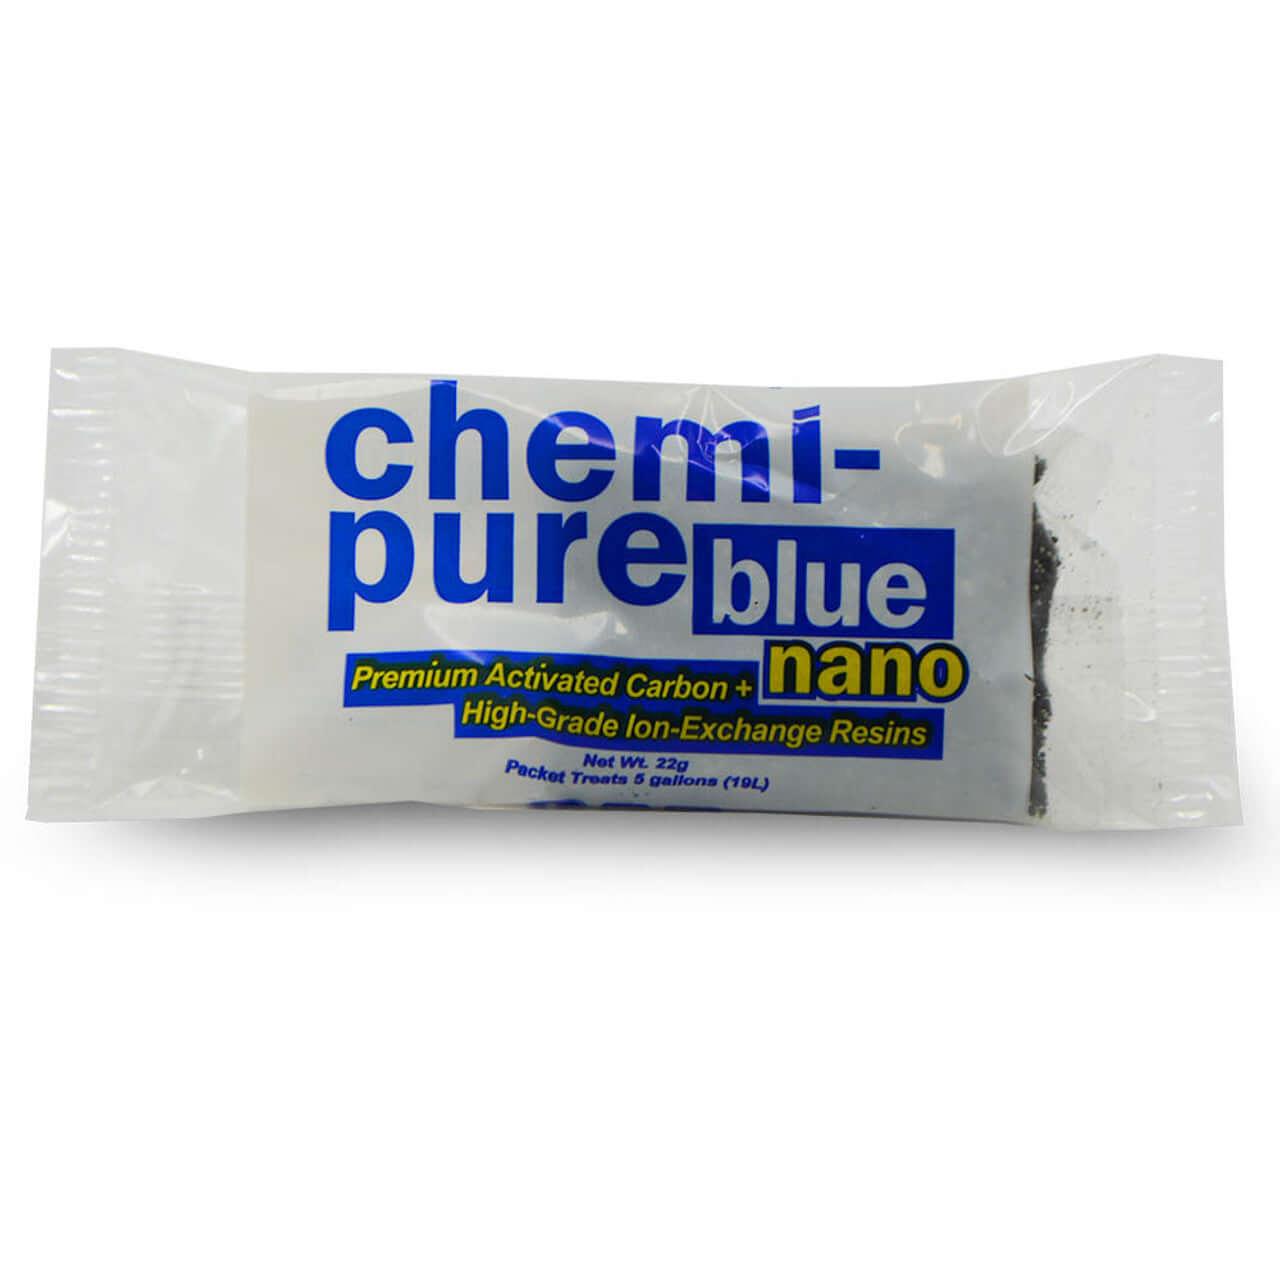 Chemi-pure Blue Nano - Koral King